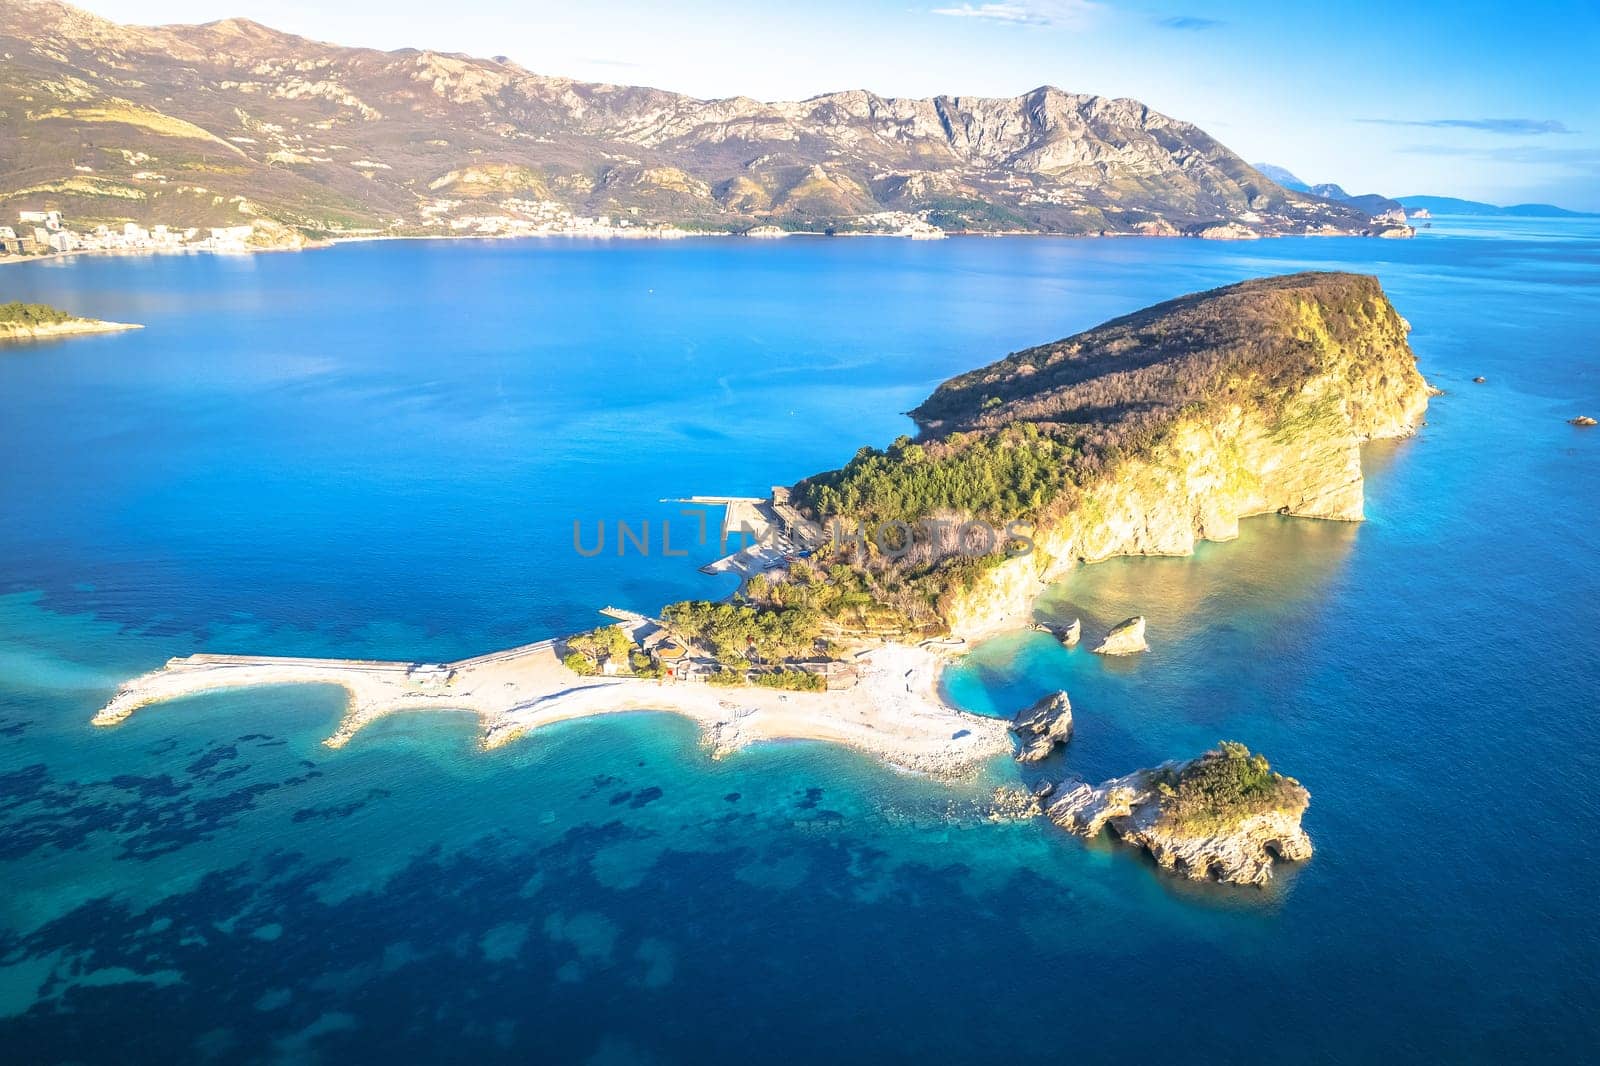 Saint Nikola island in Budva waterfront aerial view by xbrchx